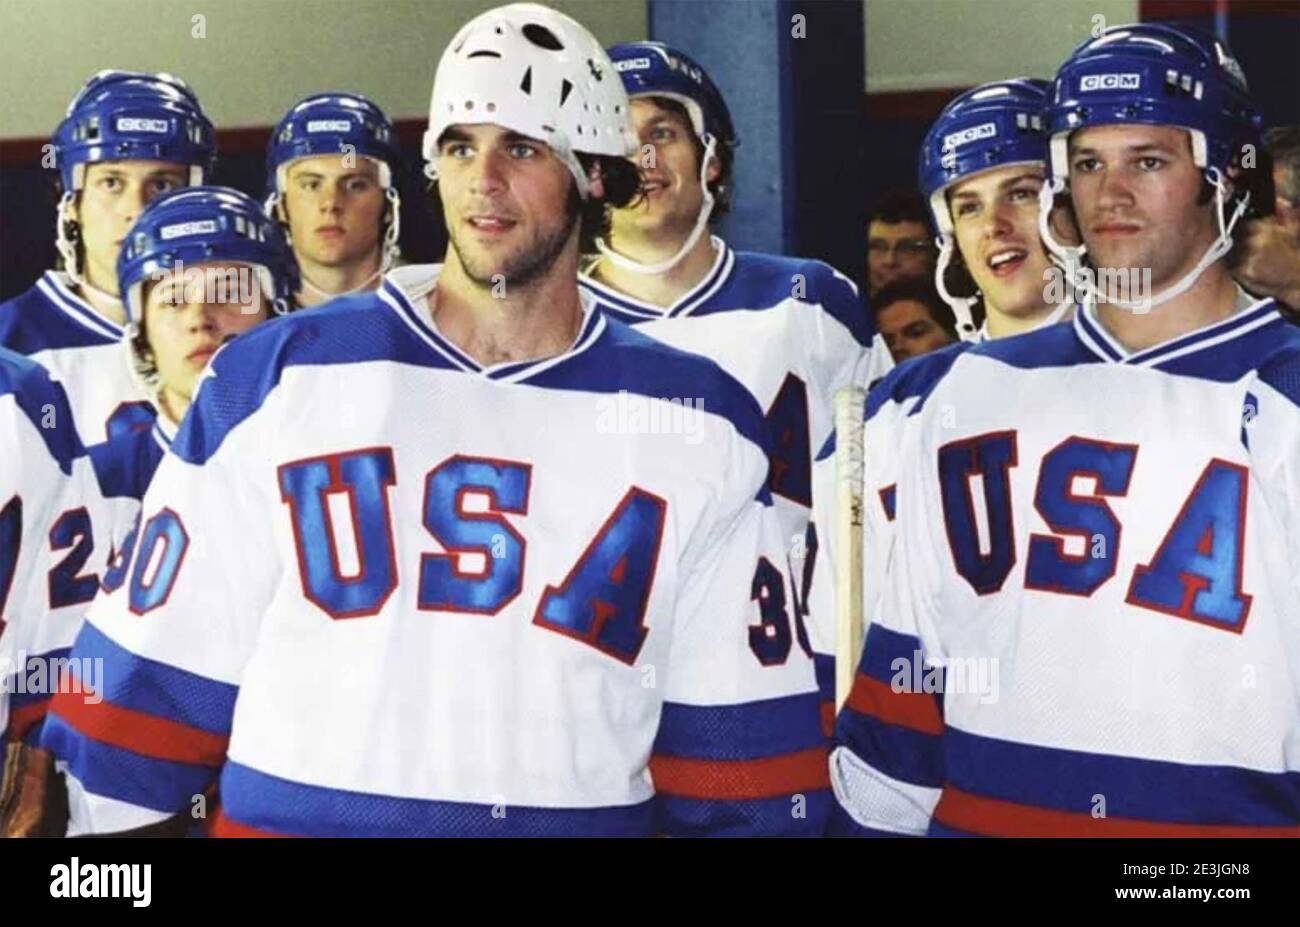 MIRACLE 2004 Buena Vista Pictures film sur les hommes américains hockey sur glace tesm remporte la médaille d'or en 1980 Jeux olympiques d'hiver Banque D'Images